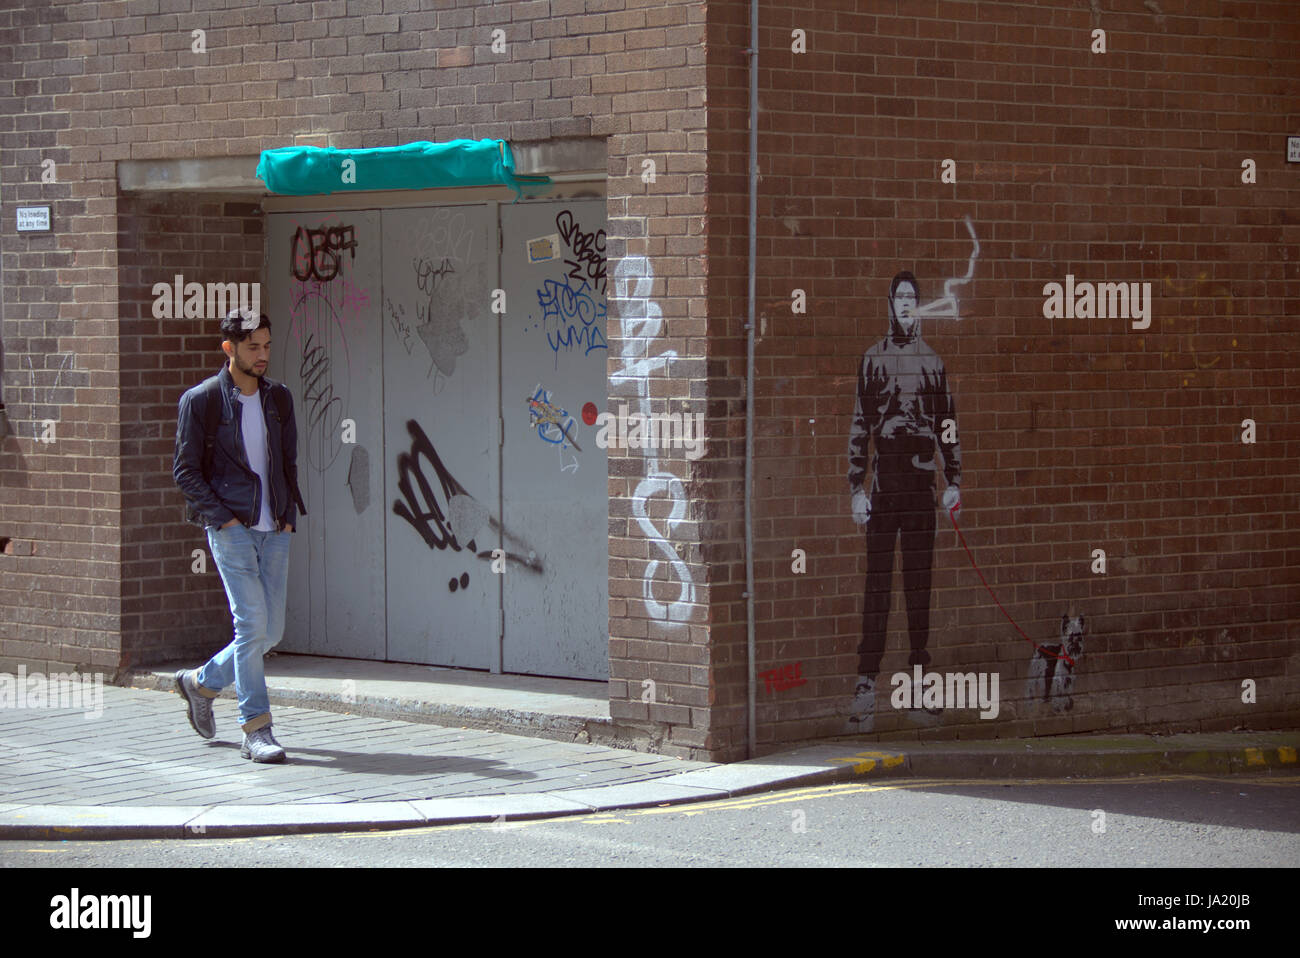 Adolescente joven caminando por la calle cerca de graffiti ilustración que puede proyectar opiniones acerca de su situación Foto de stock